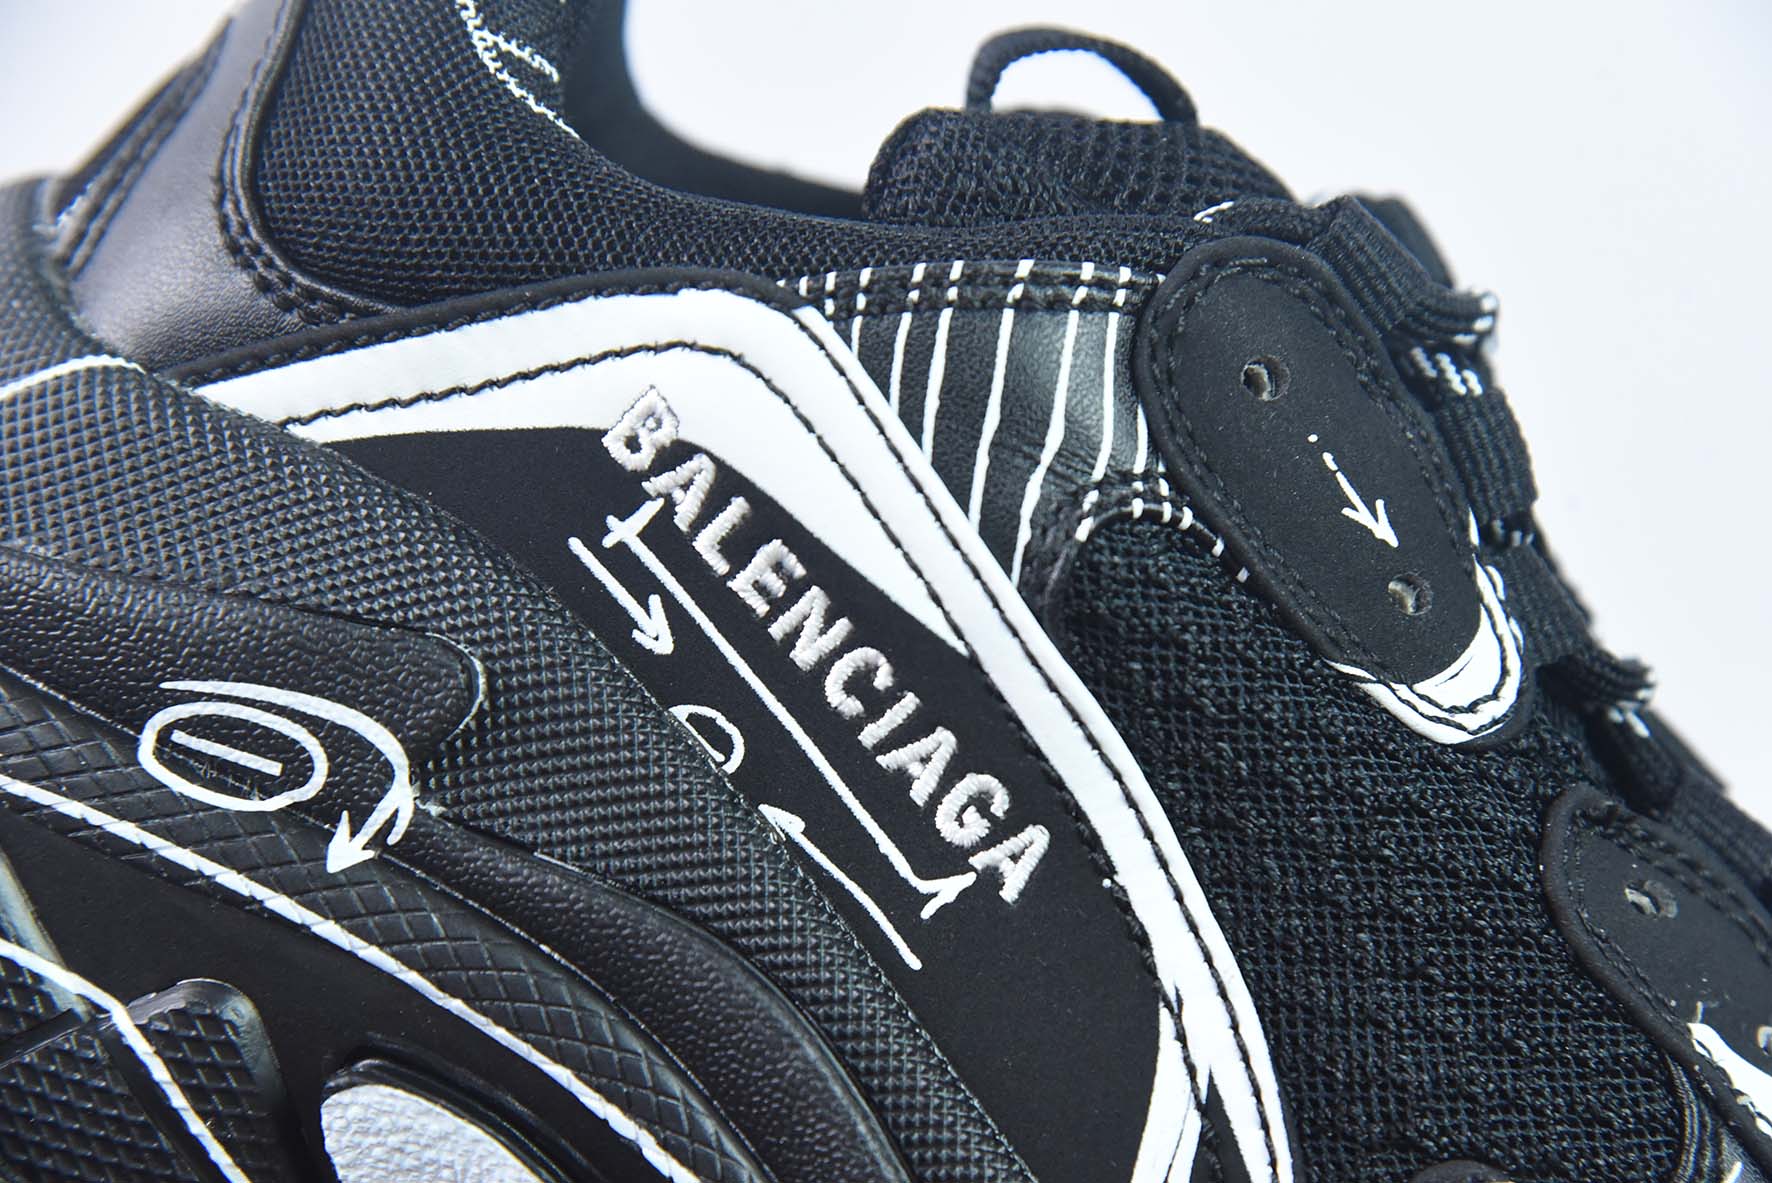 巴黎世家 联名款 涂鸦 印花 一代 1.0 Balenciaga Triple S运动鞋